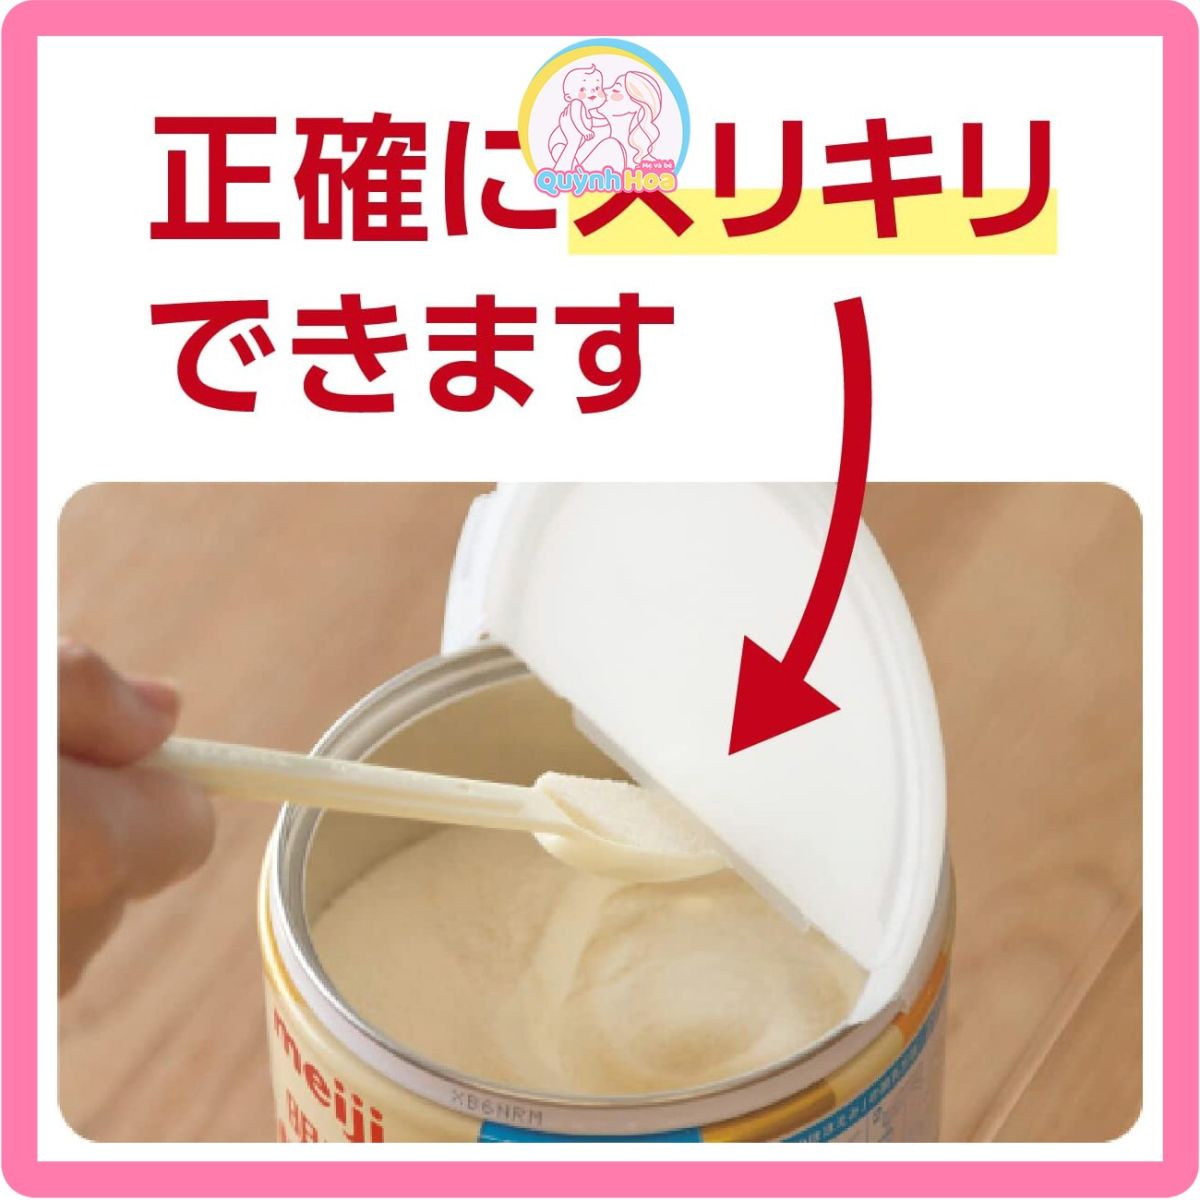 Sữa Meiji Nhật số 0-1, 800g [DATE 02/2025] thumb 1